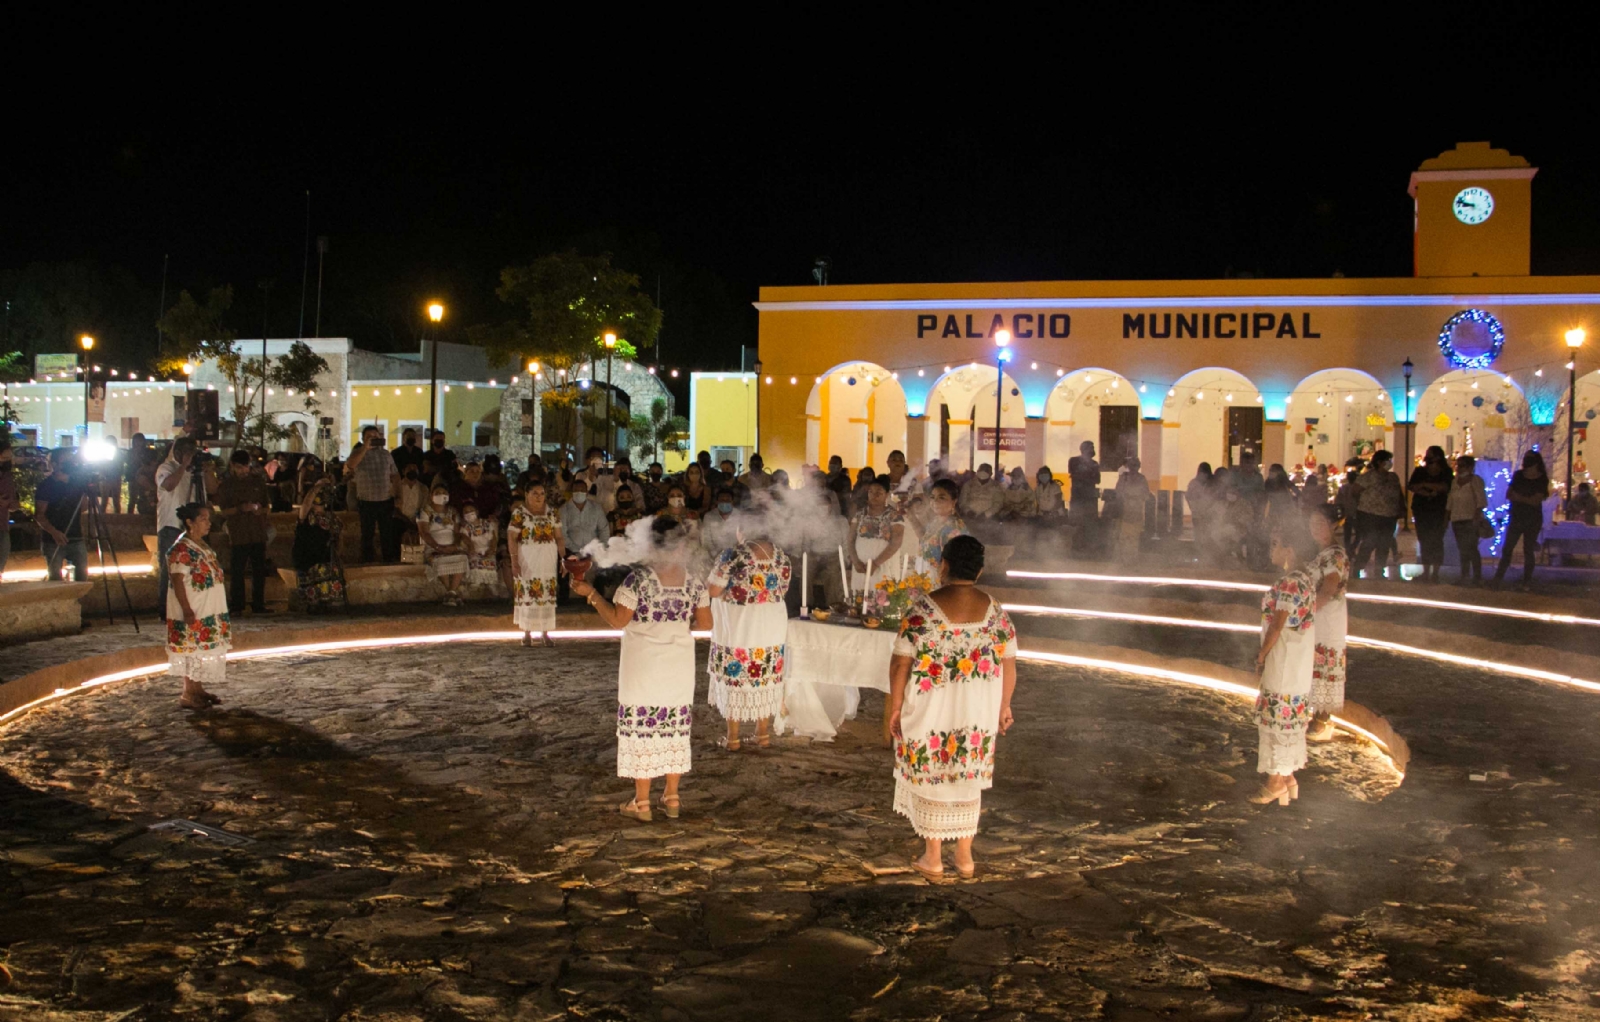 La velada artística comenzó en el anfiteatro del centro de la localidad, con una ceremonia de agradecimiento de divisiones y cosechas de la Xunaan Kab